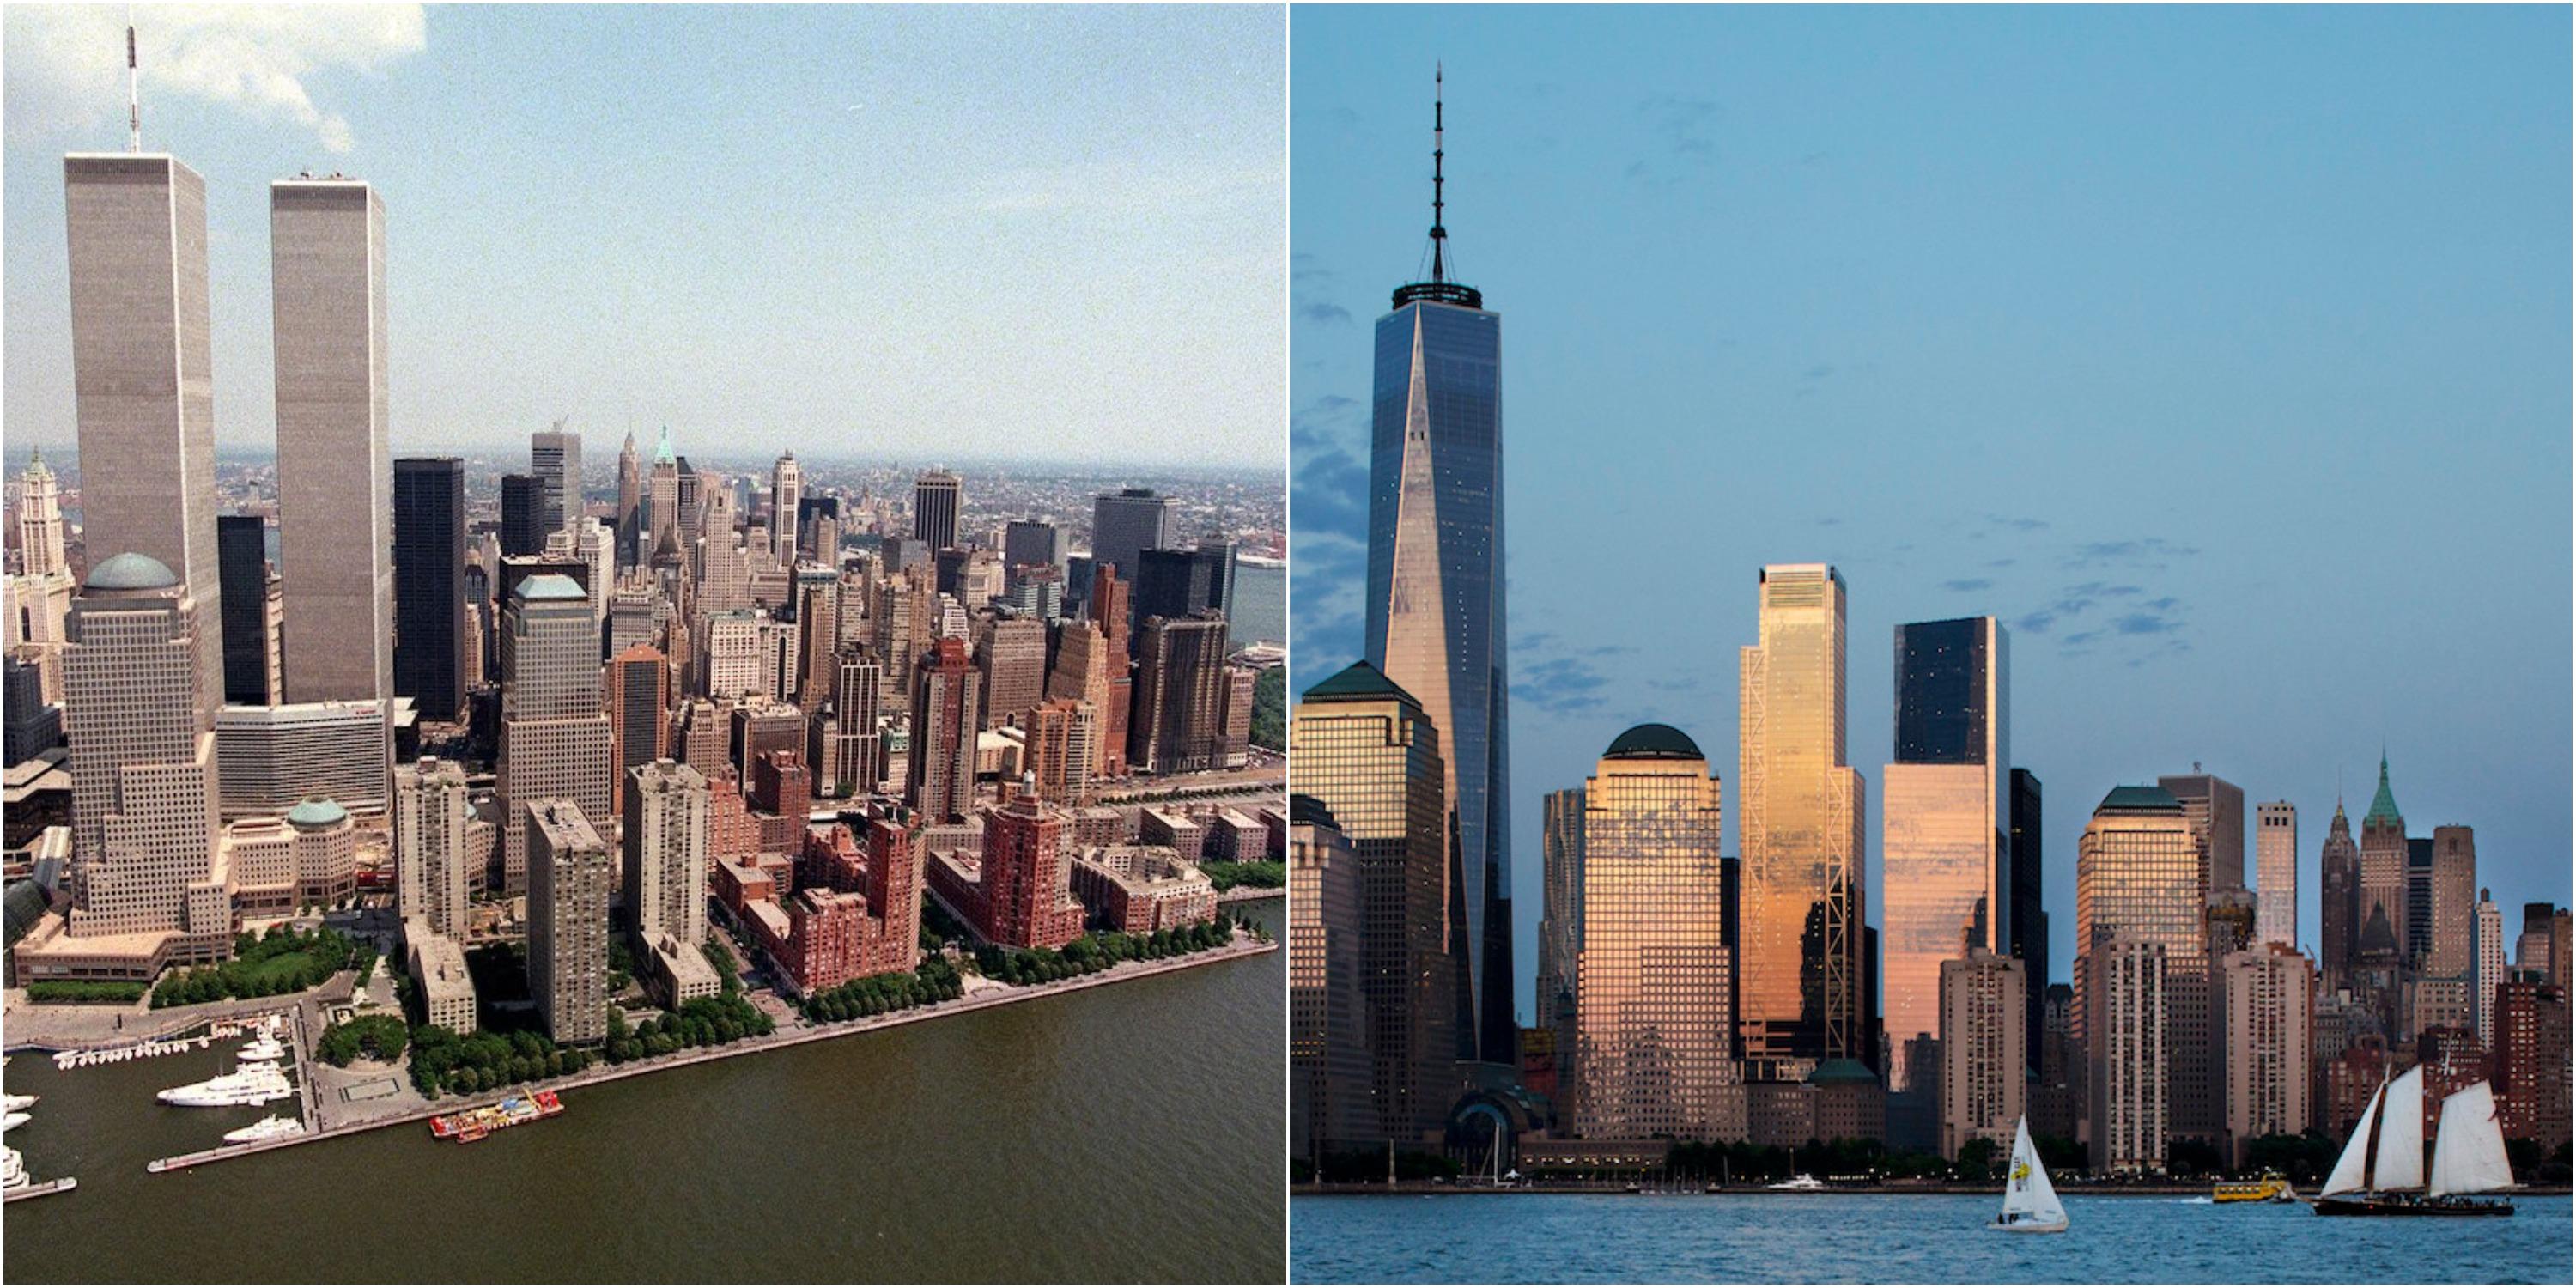 9.11同時多発テロから20年、グラウンド・ゼロ再建を振り返る 